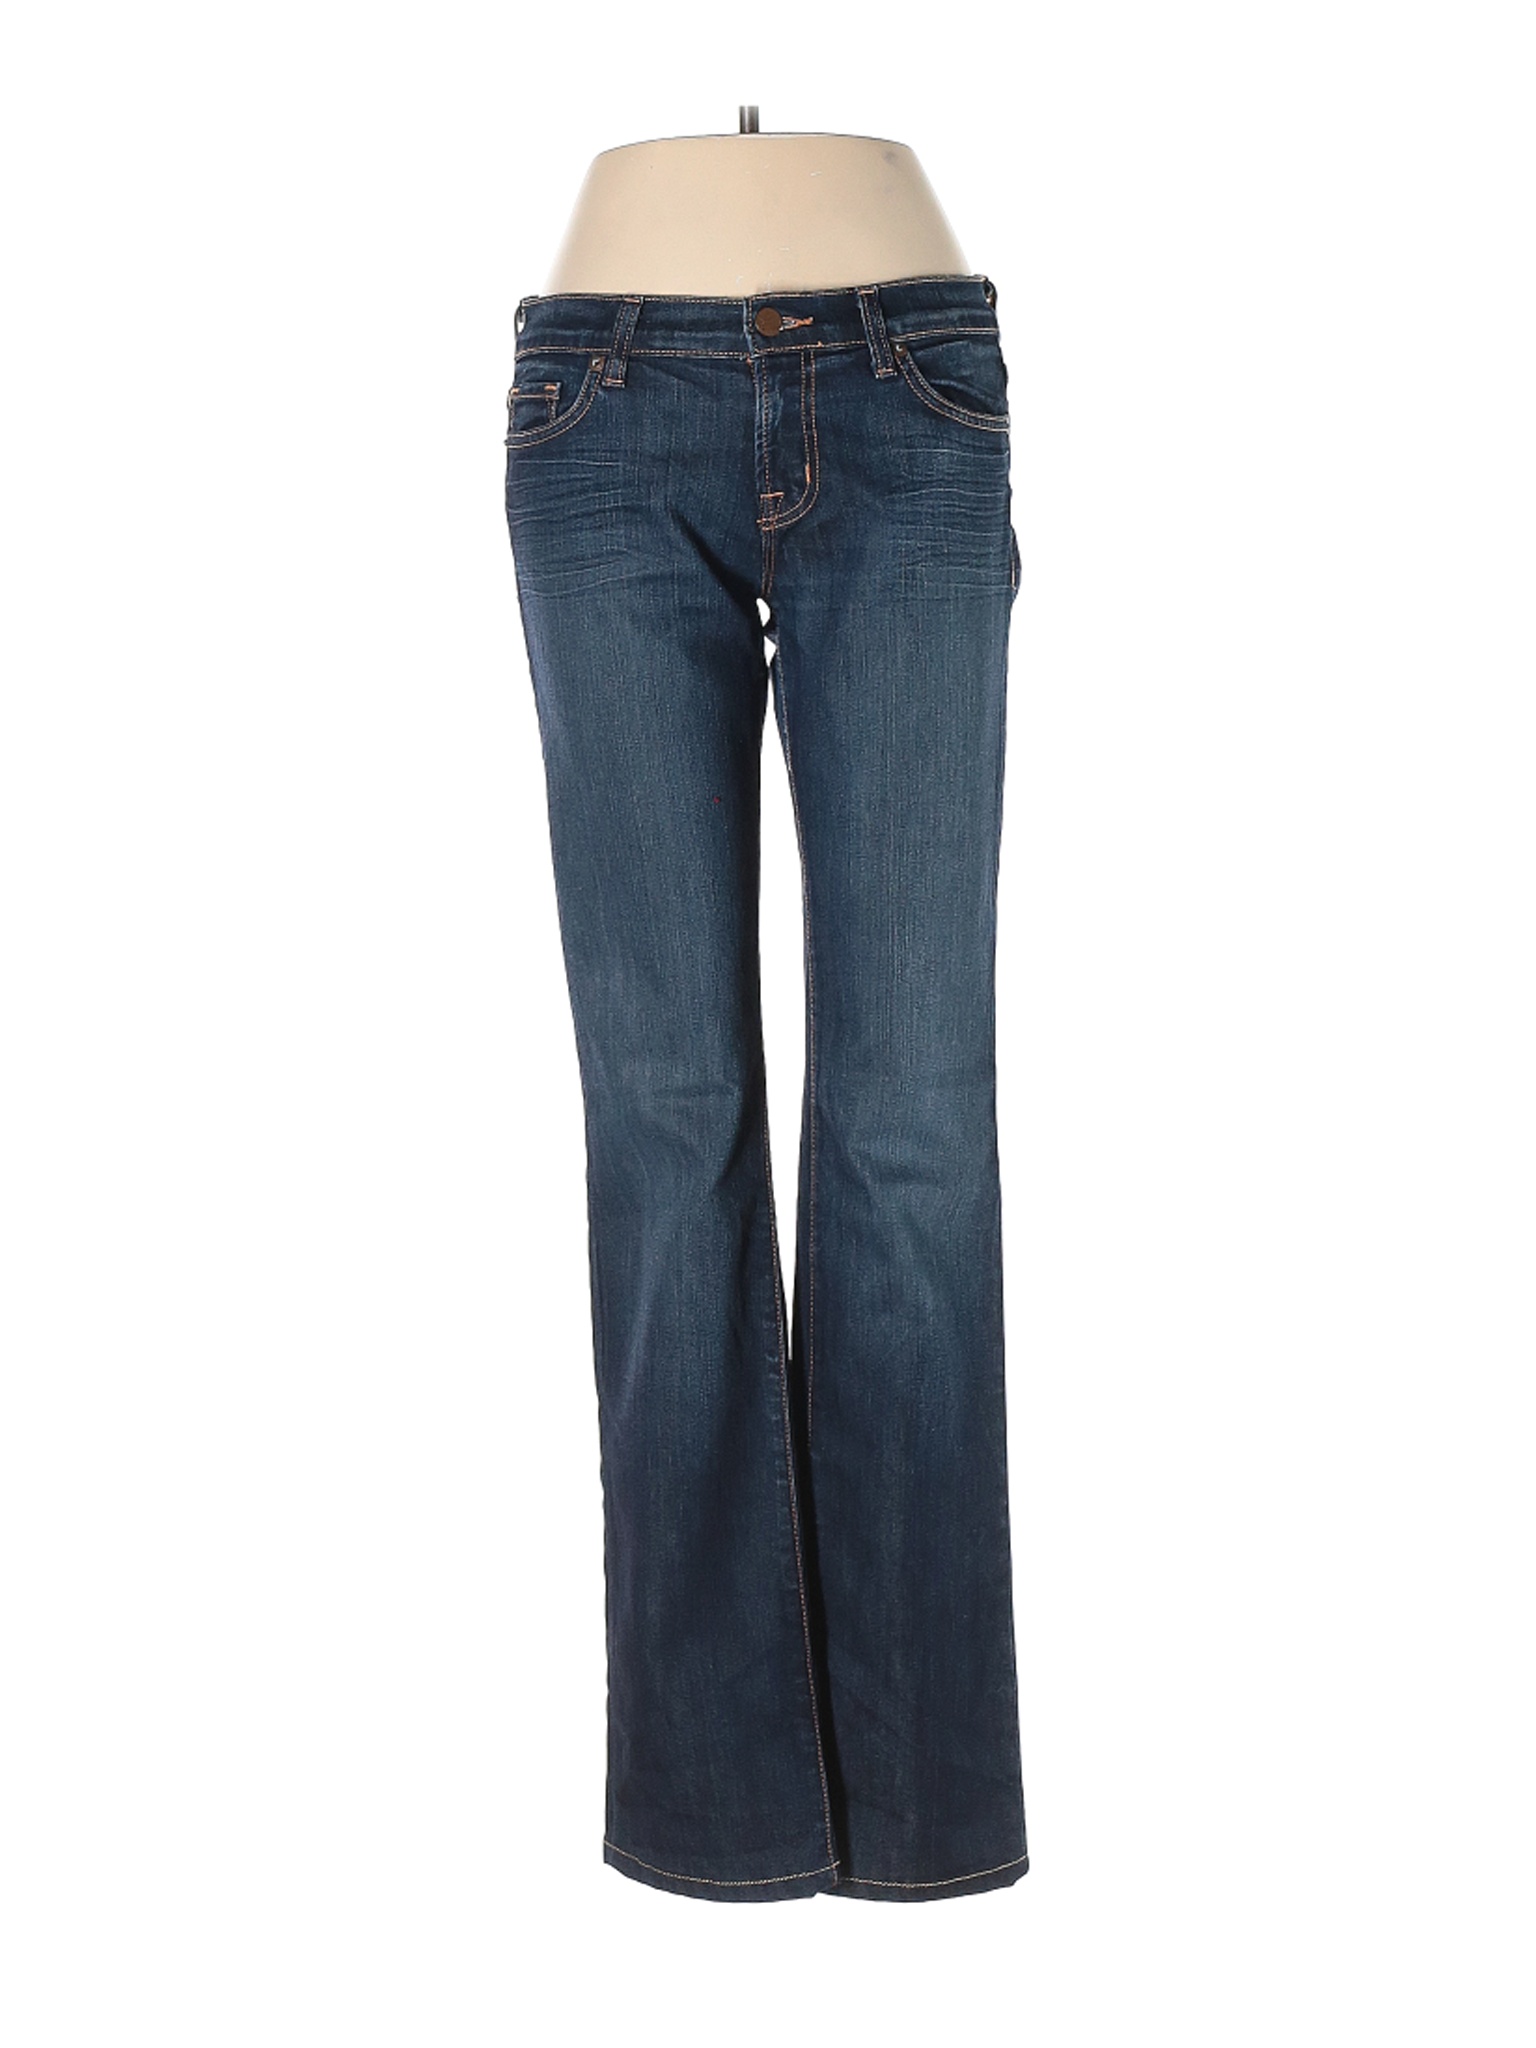 J Brand Women Blue Jeans 27W | eBay